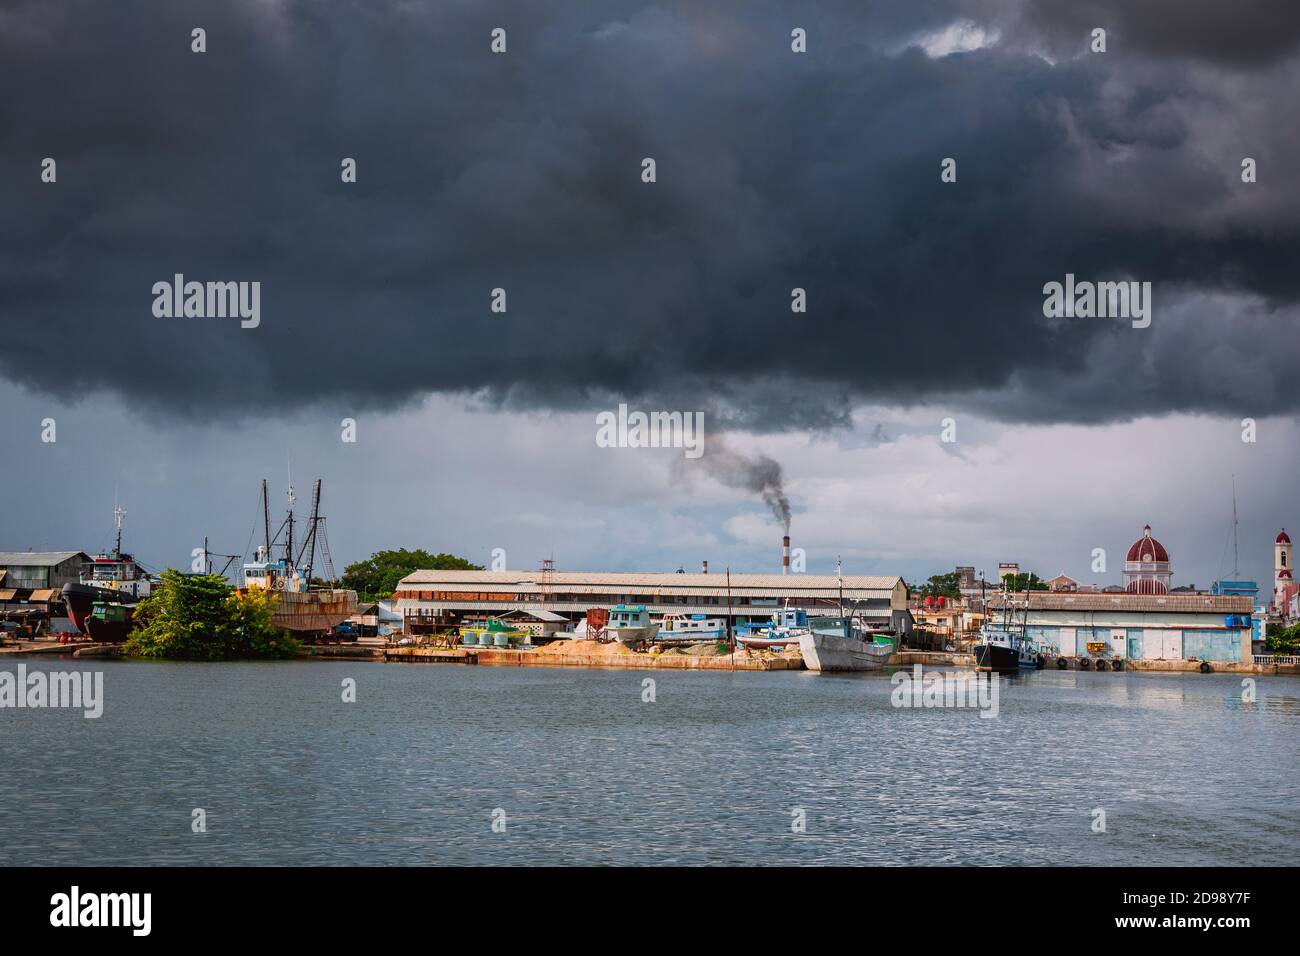 Front de mer menaçant annonçant une tempête tropicale, baie de Cienfuegos. Cienfuegos, Cuba, Amérique latine et Caraïbes Banque D'Images